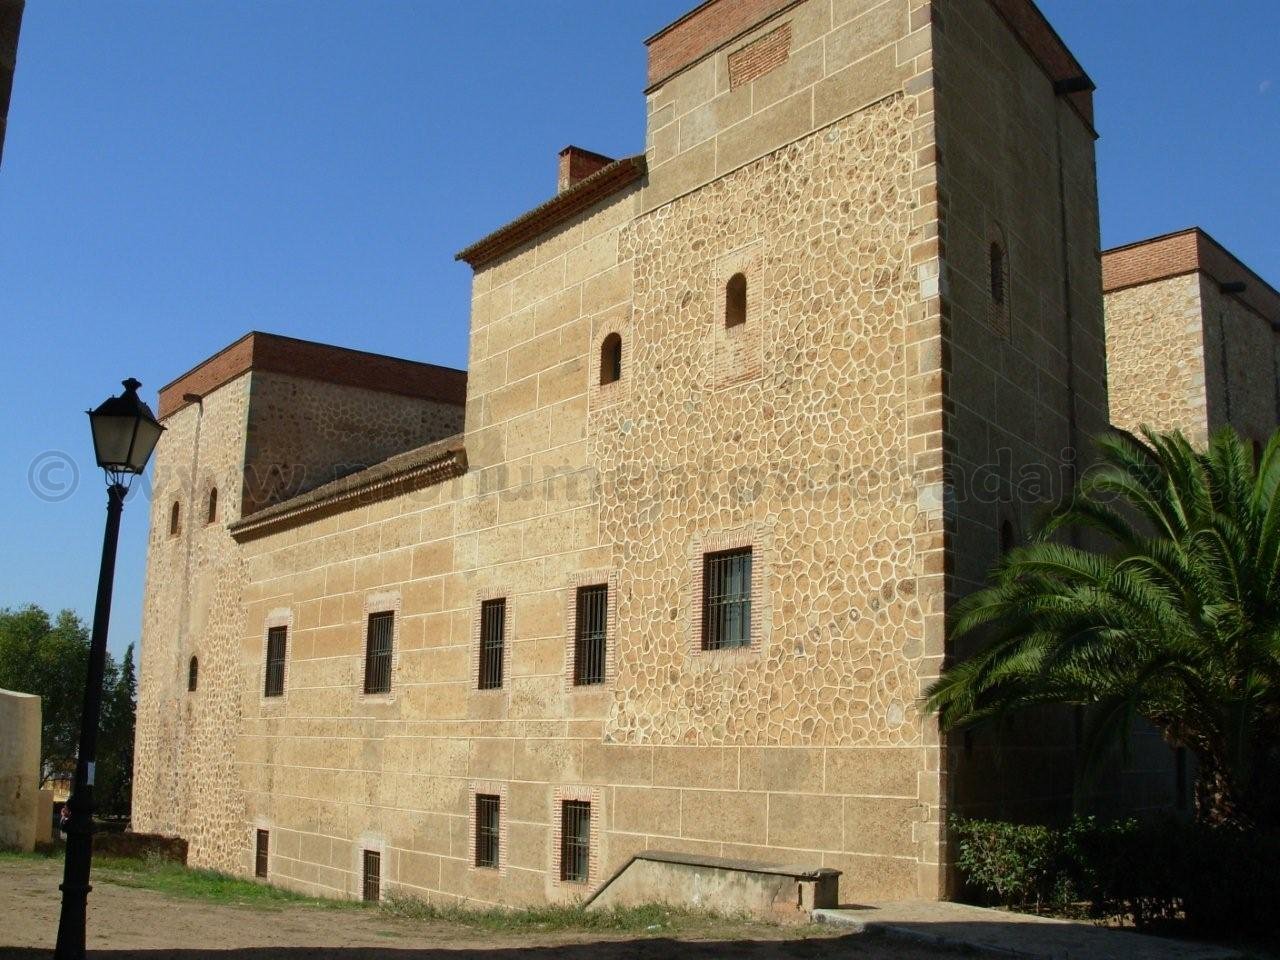 Palacio de los Duques de la Roca, Alcazaba de Badajoz